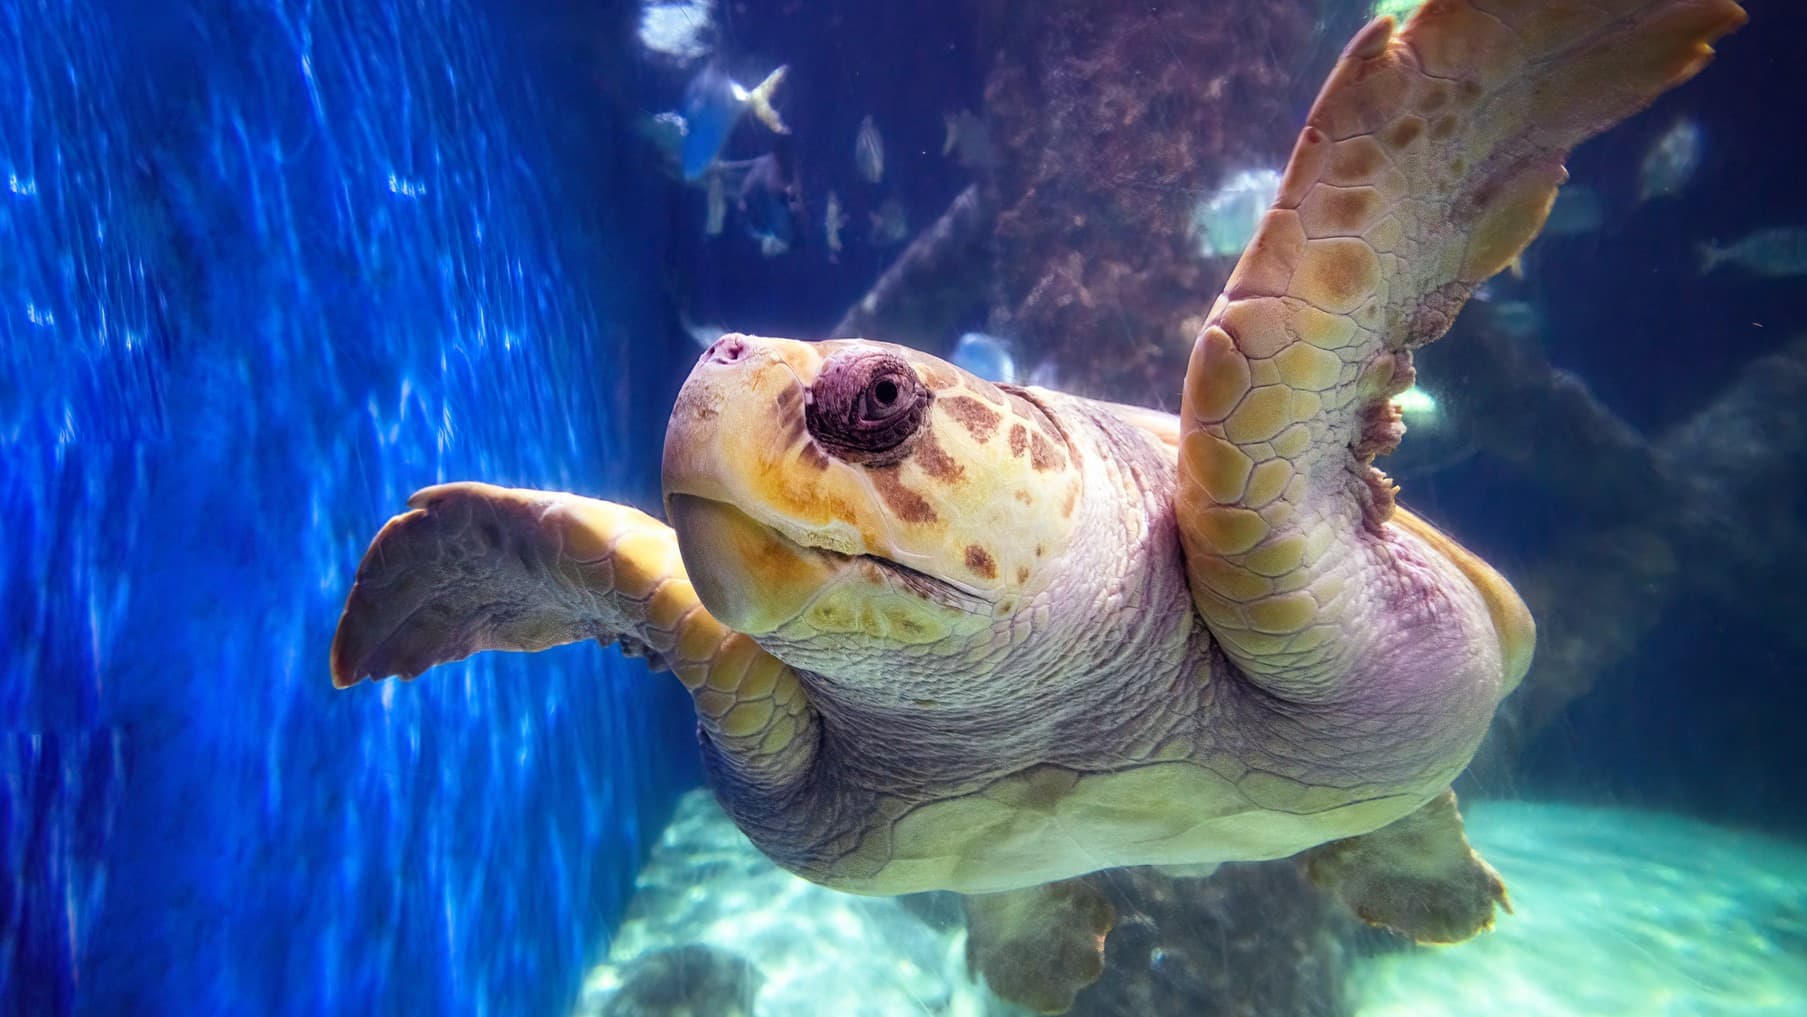 A loggerhead sea turtle swims close to the camera